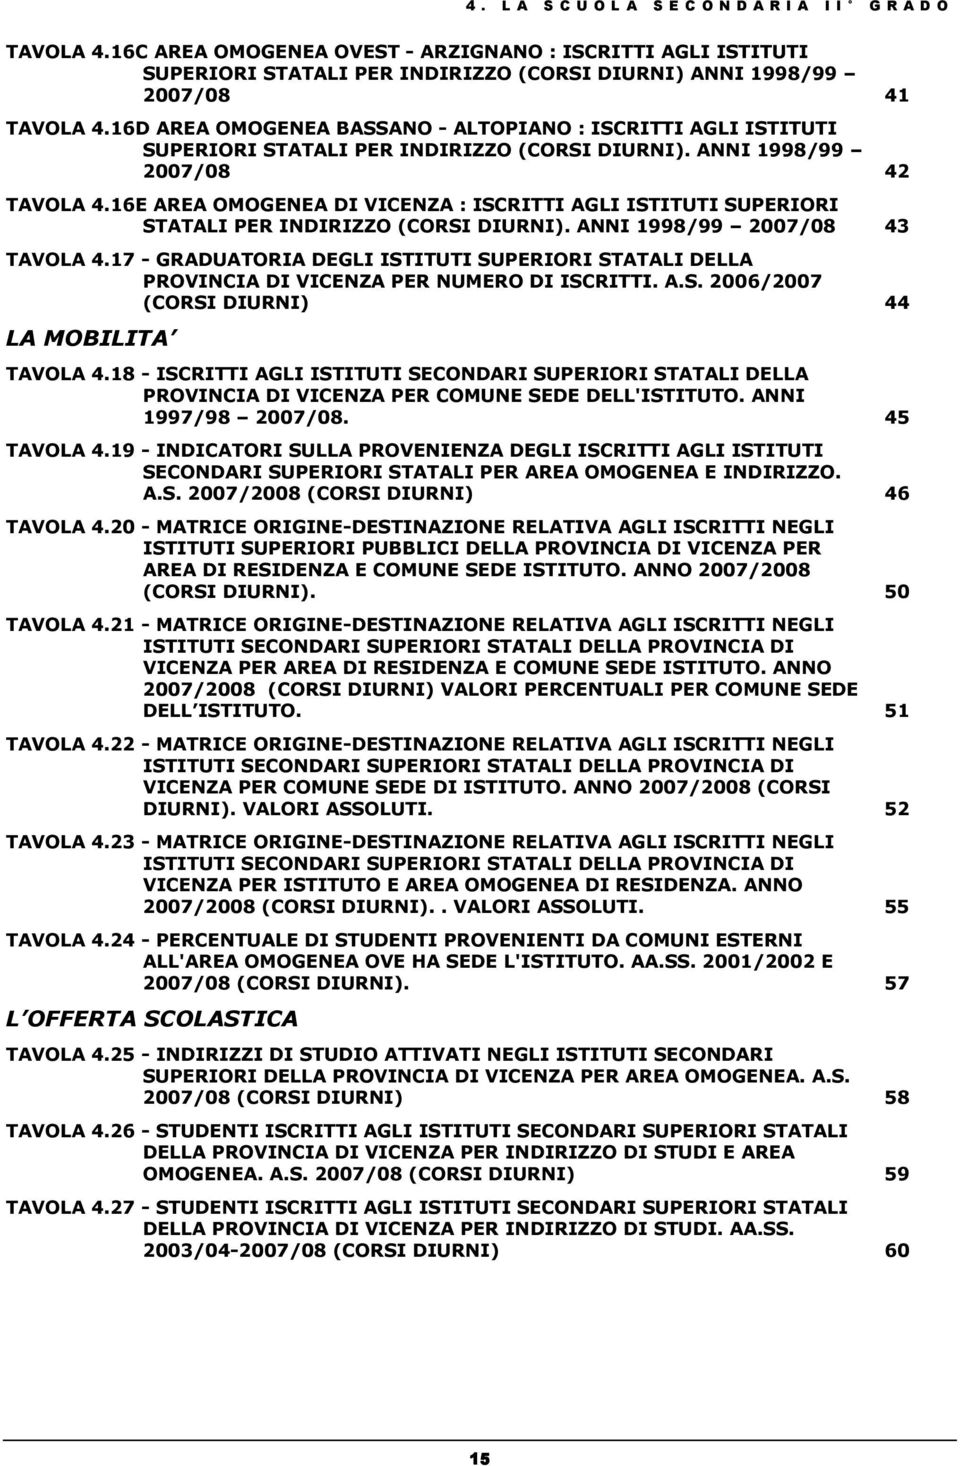 16D AREA OMOGENEA BASSANO - ALTOPIANO : ISCRITTI AGLI ISTITUTI SUPERIORI STATALI PER INDIRIZZO (CORSI DIURNI). ANNI 1998/99 2007/08 42 TAVOLA 4.